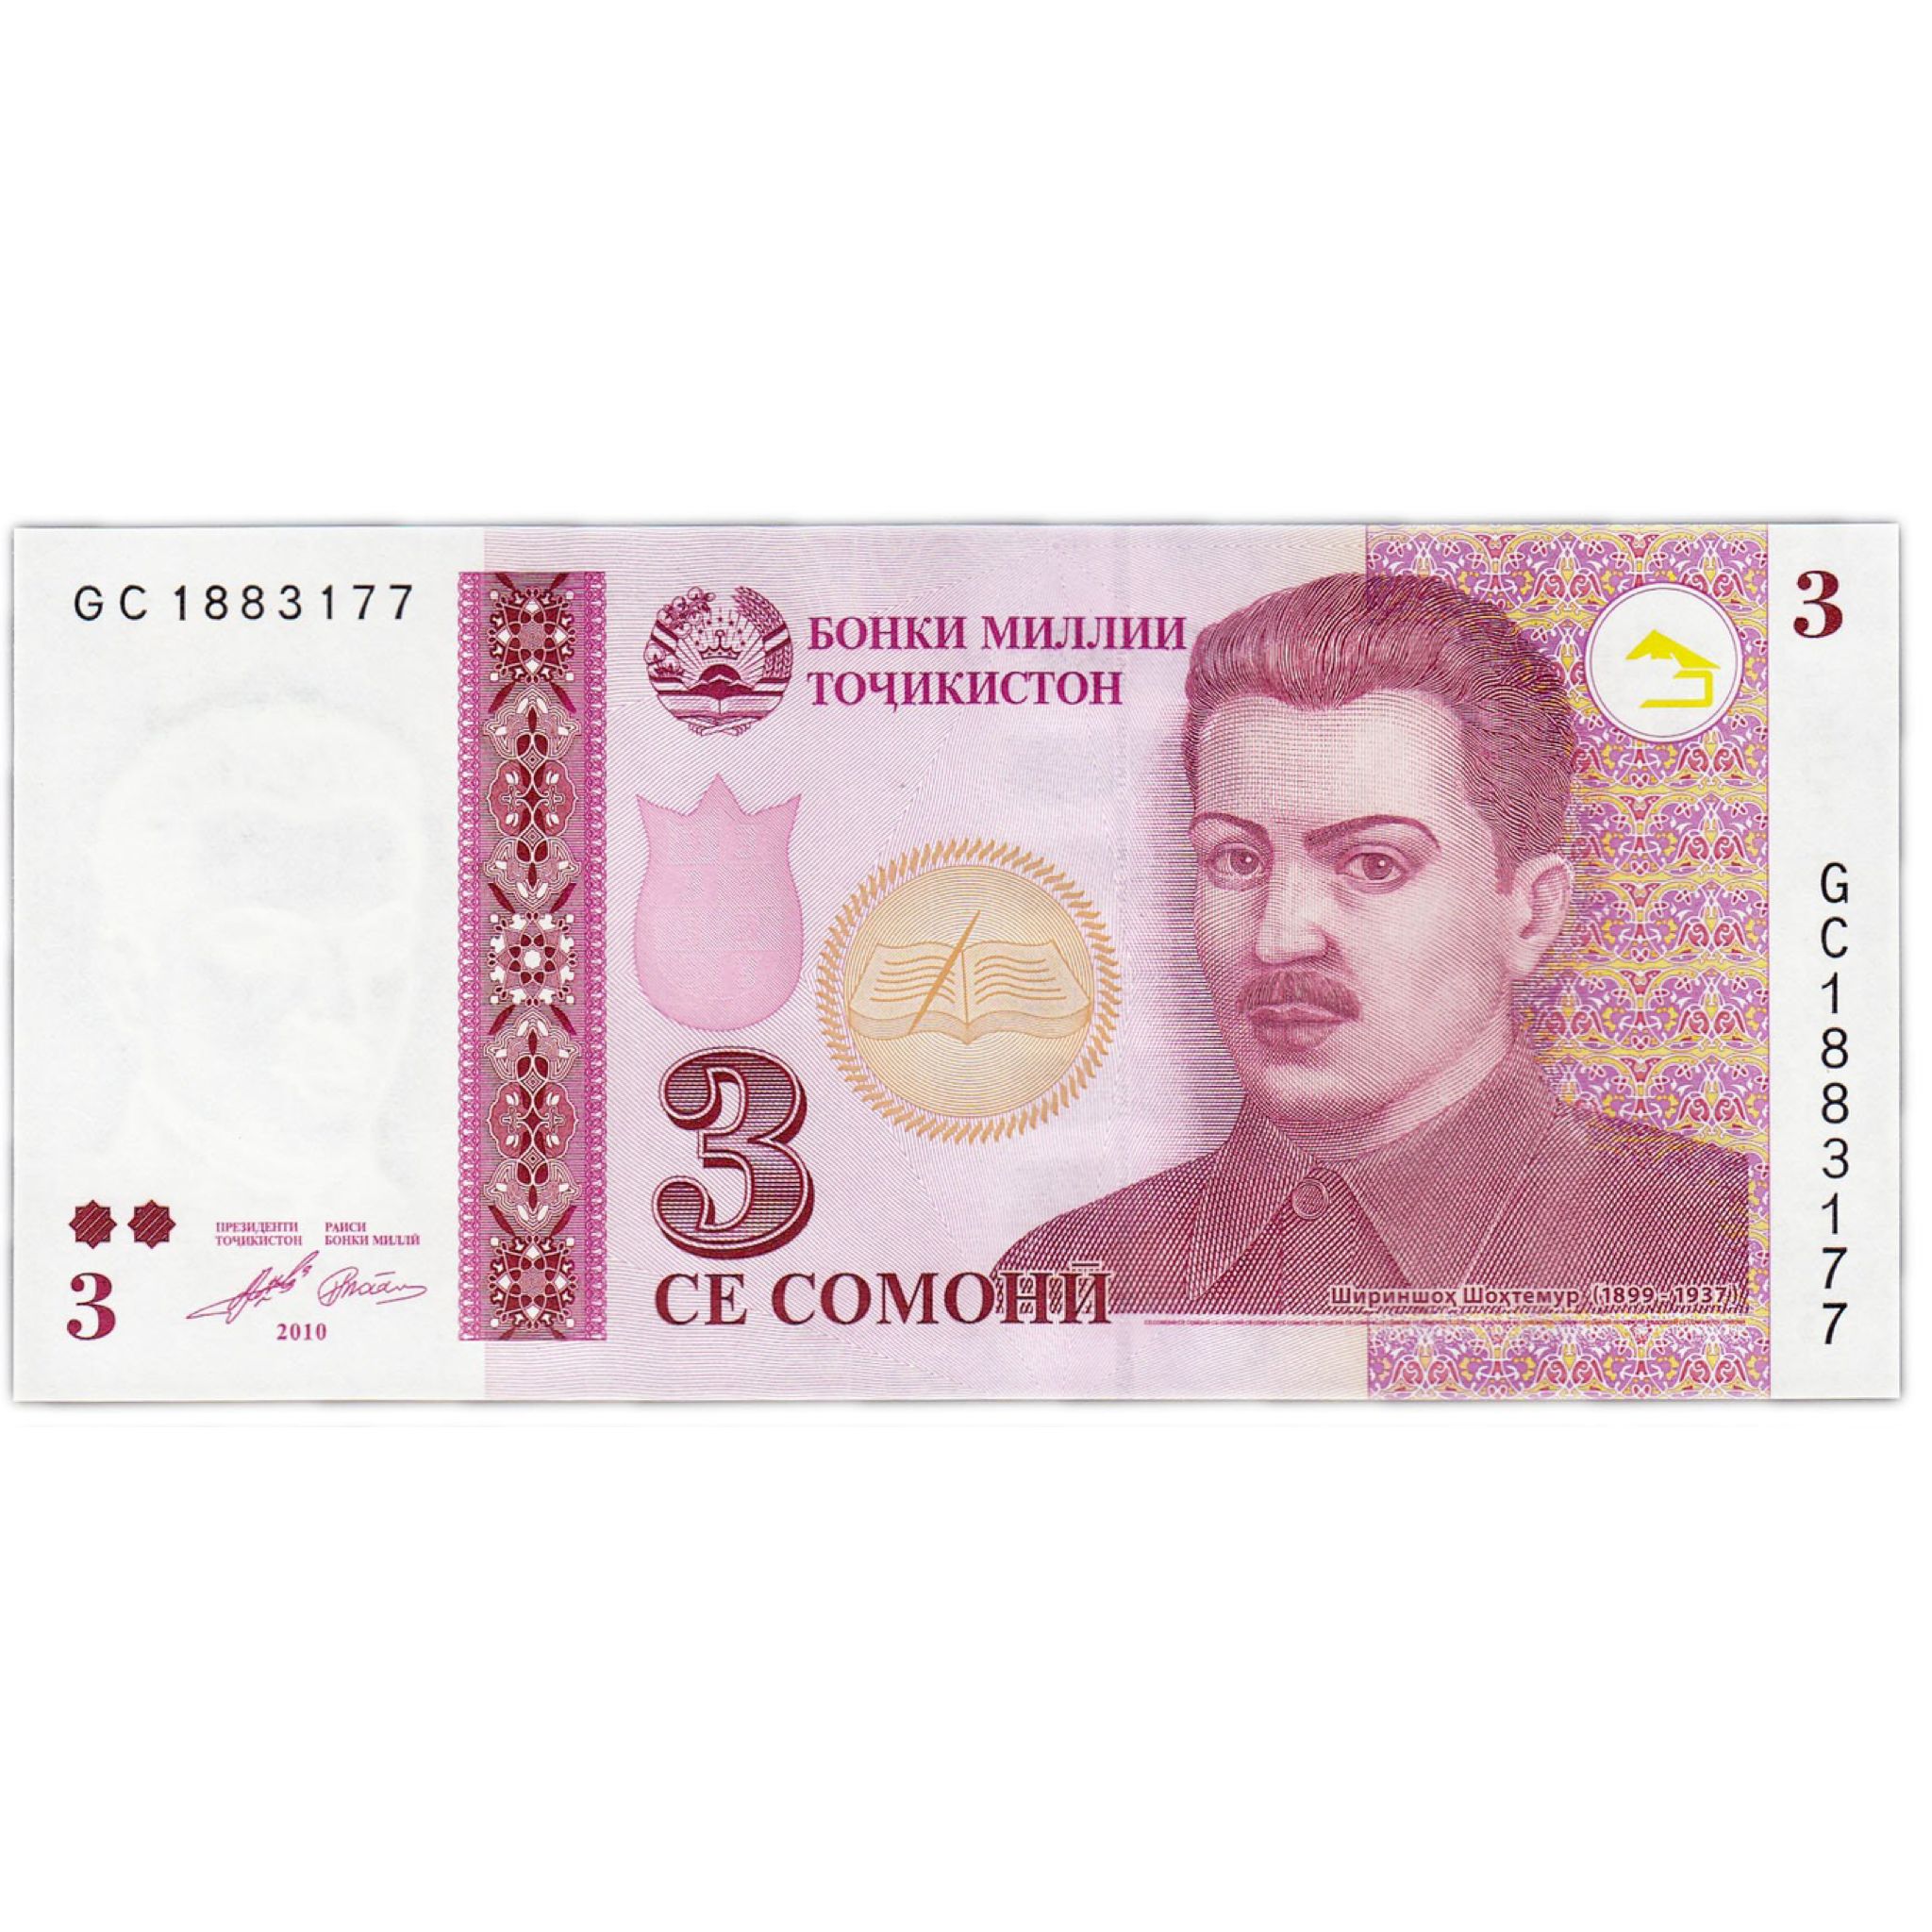 500000 рублей в таджикских сомони. Деньги Таджикистана. Купюры Таджикистана. Таджикские банкноты. Денежные купюры Таджикистана.